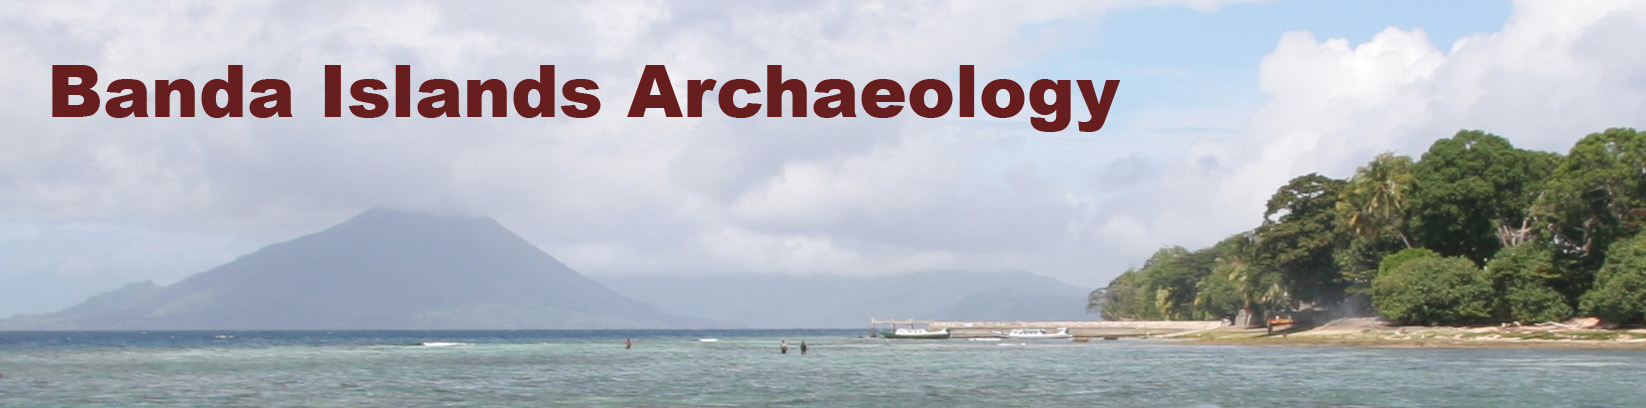 Banda Islands Archaeology